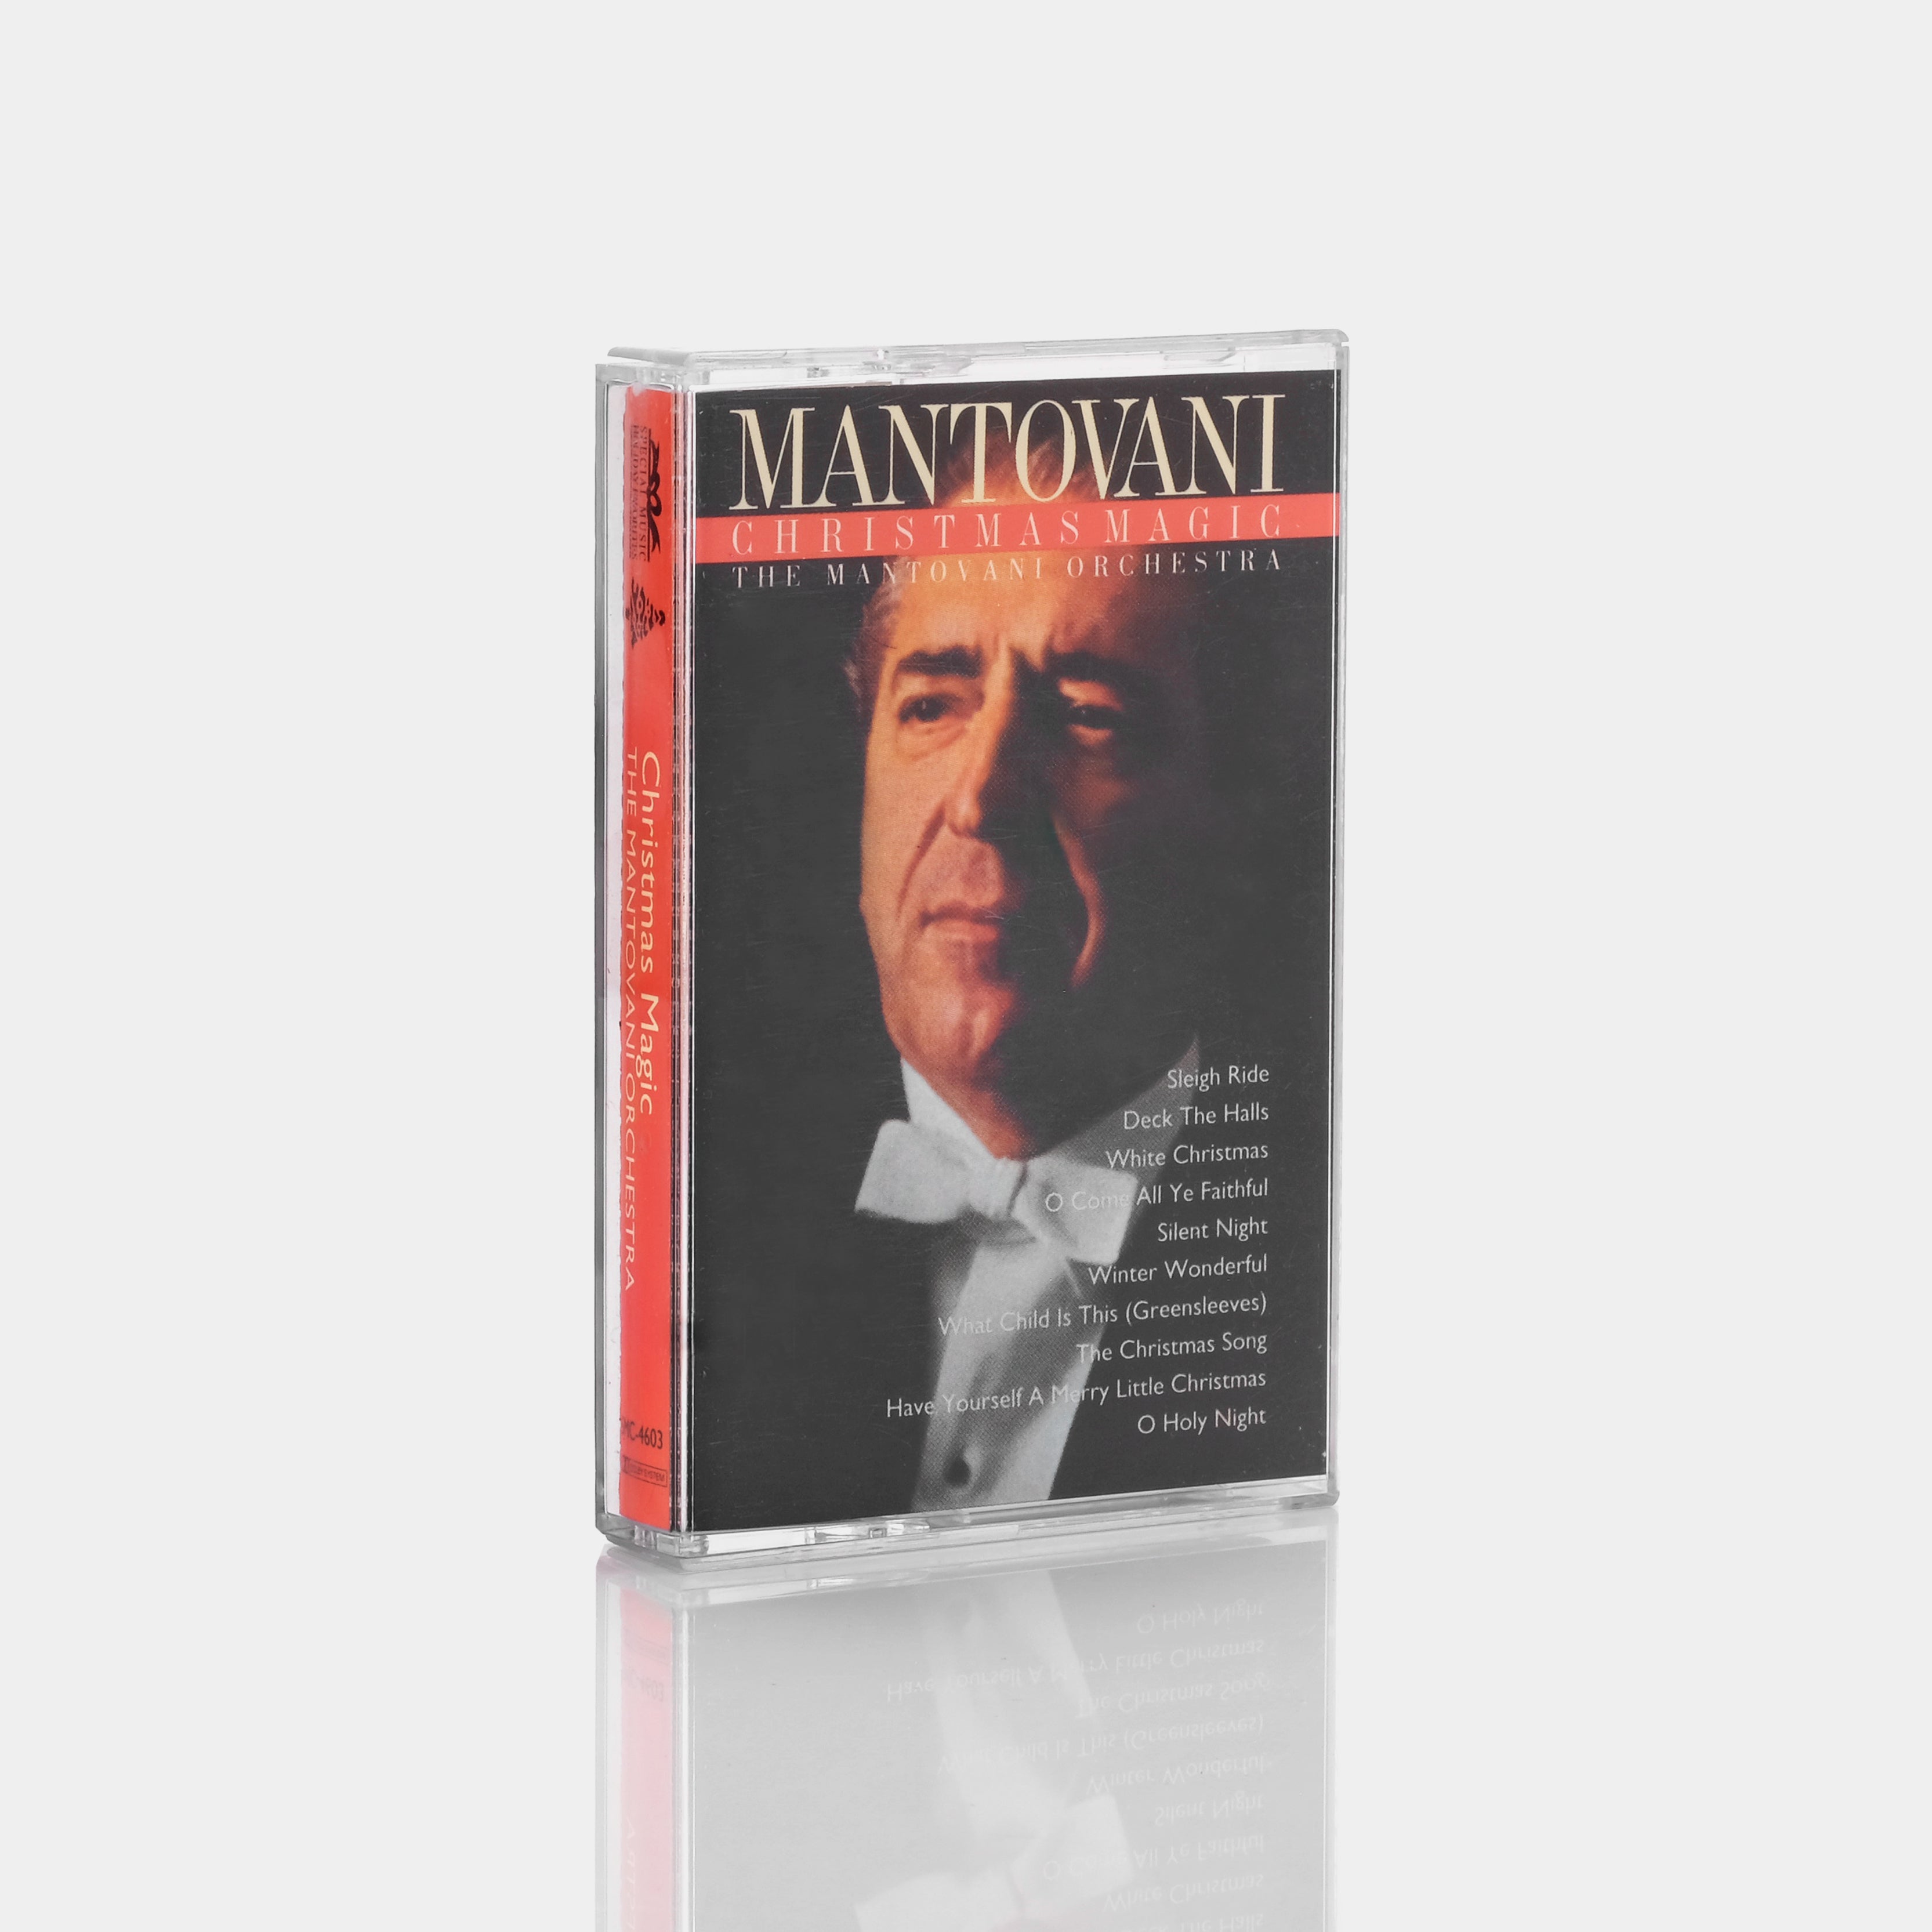 Mantovani, The Mantovani Orchestra - Christmas Magic Cassette Tape